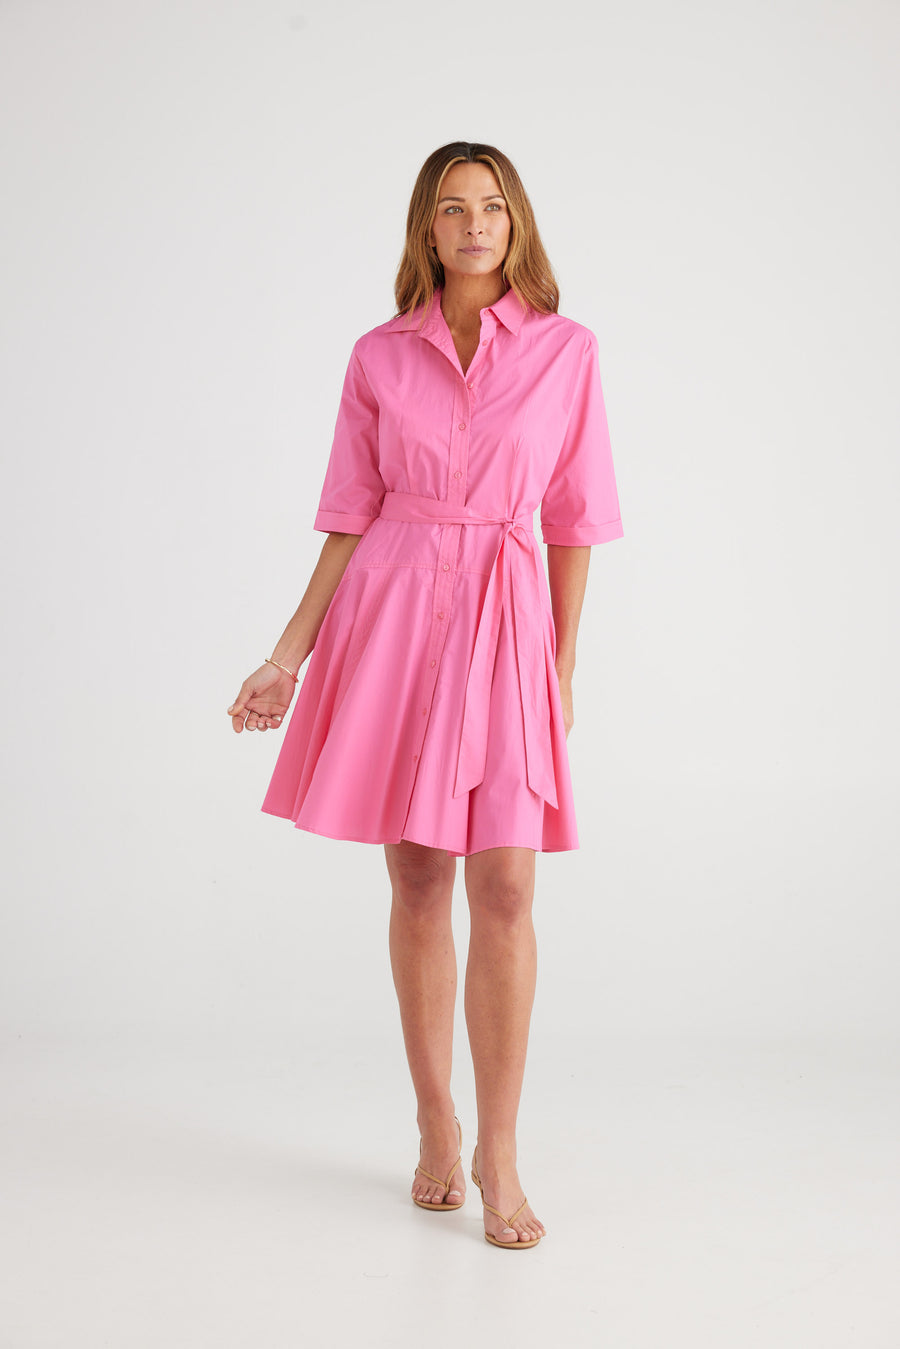 Raffa Dress - Hot Pink